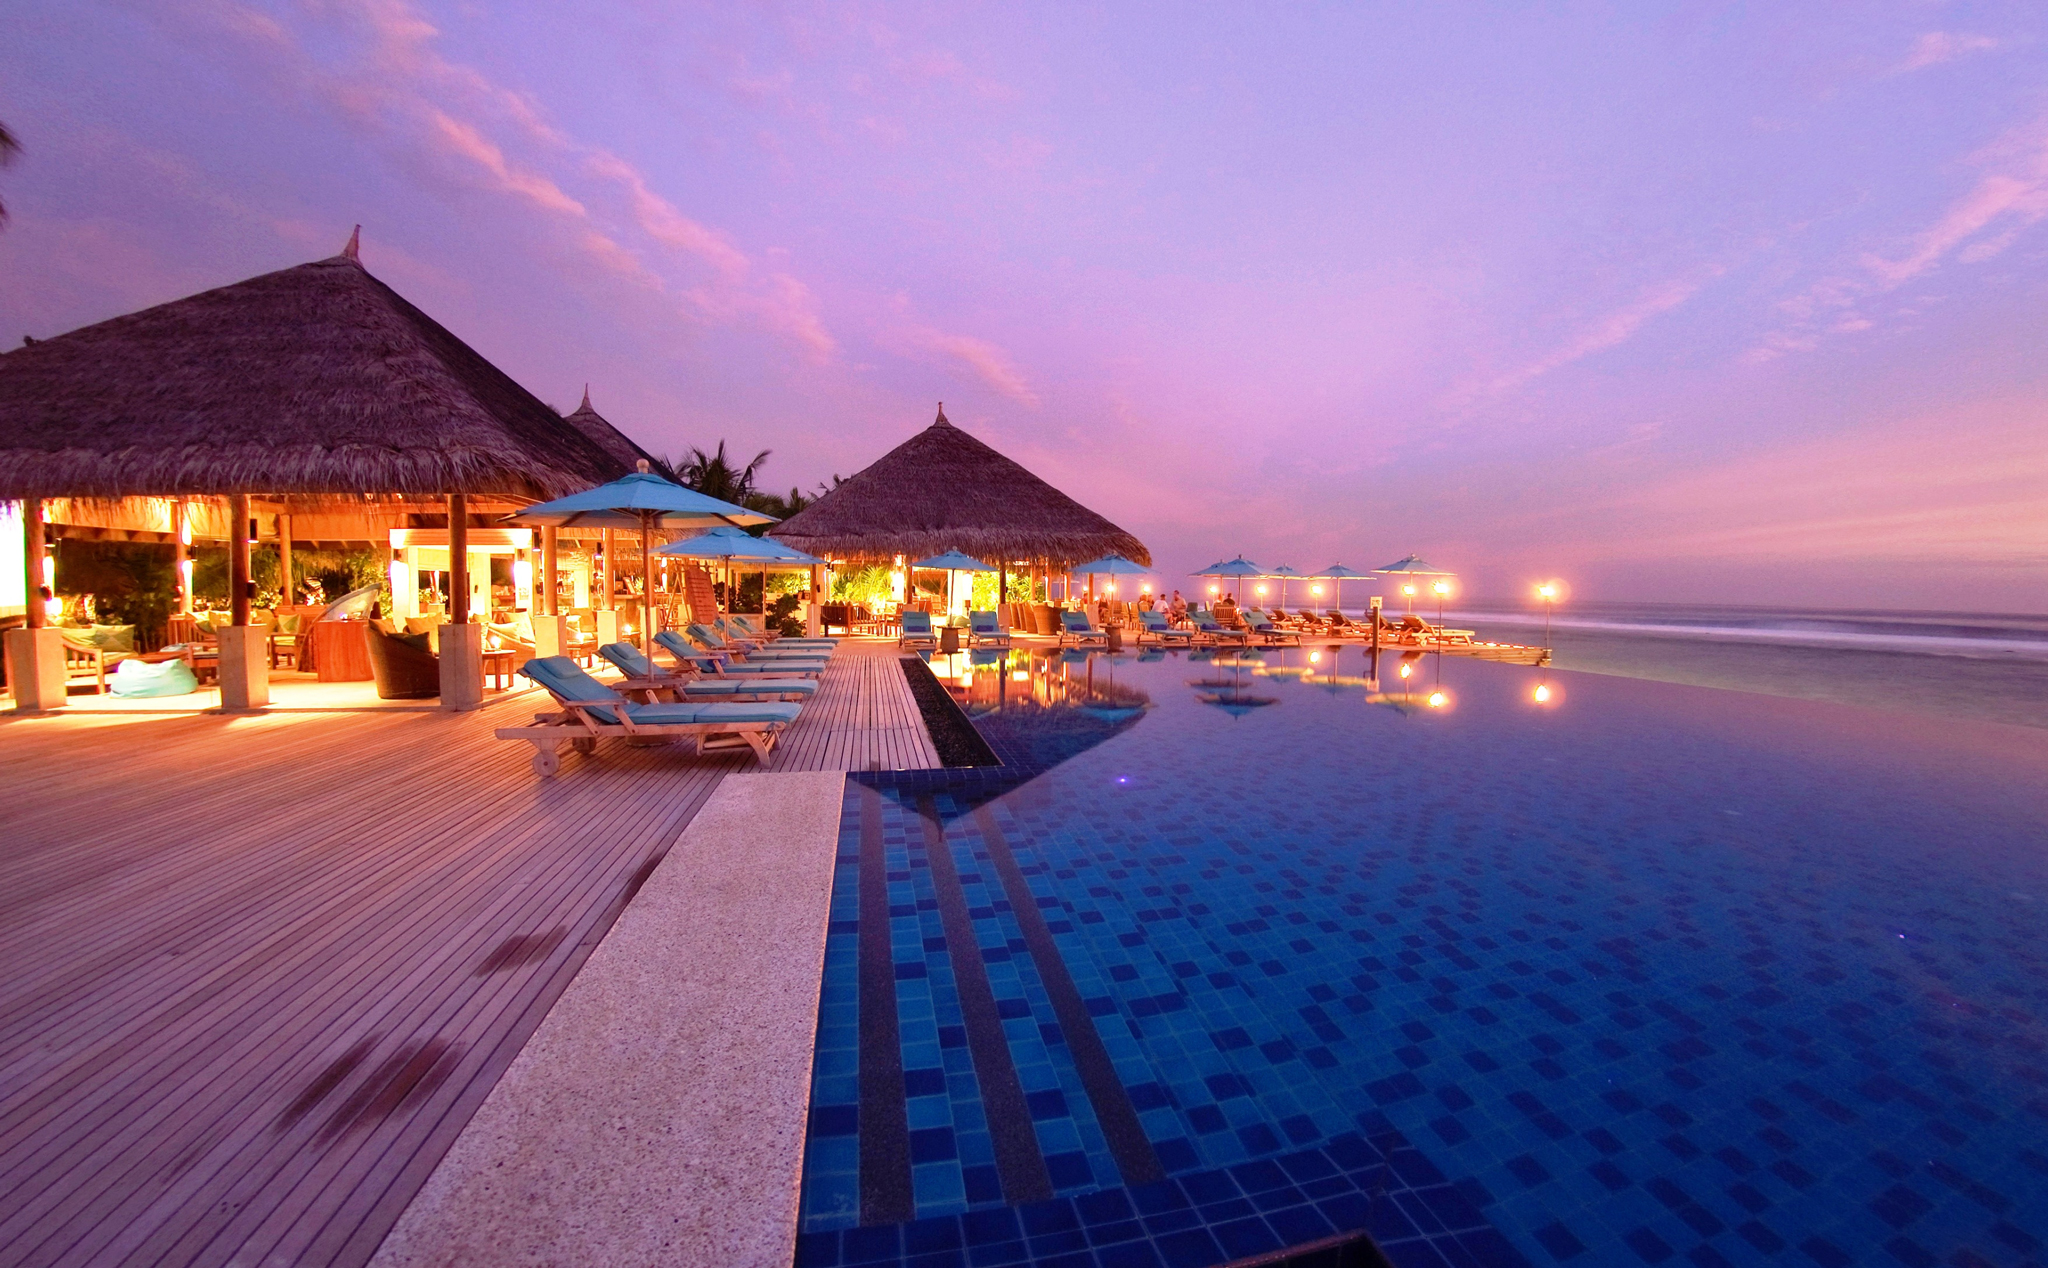 Mời các bạn xem công trình nhà hàng, khách sạn dưới biển tuyệt đẹp của resort Conrad Maldives